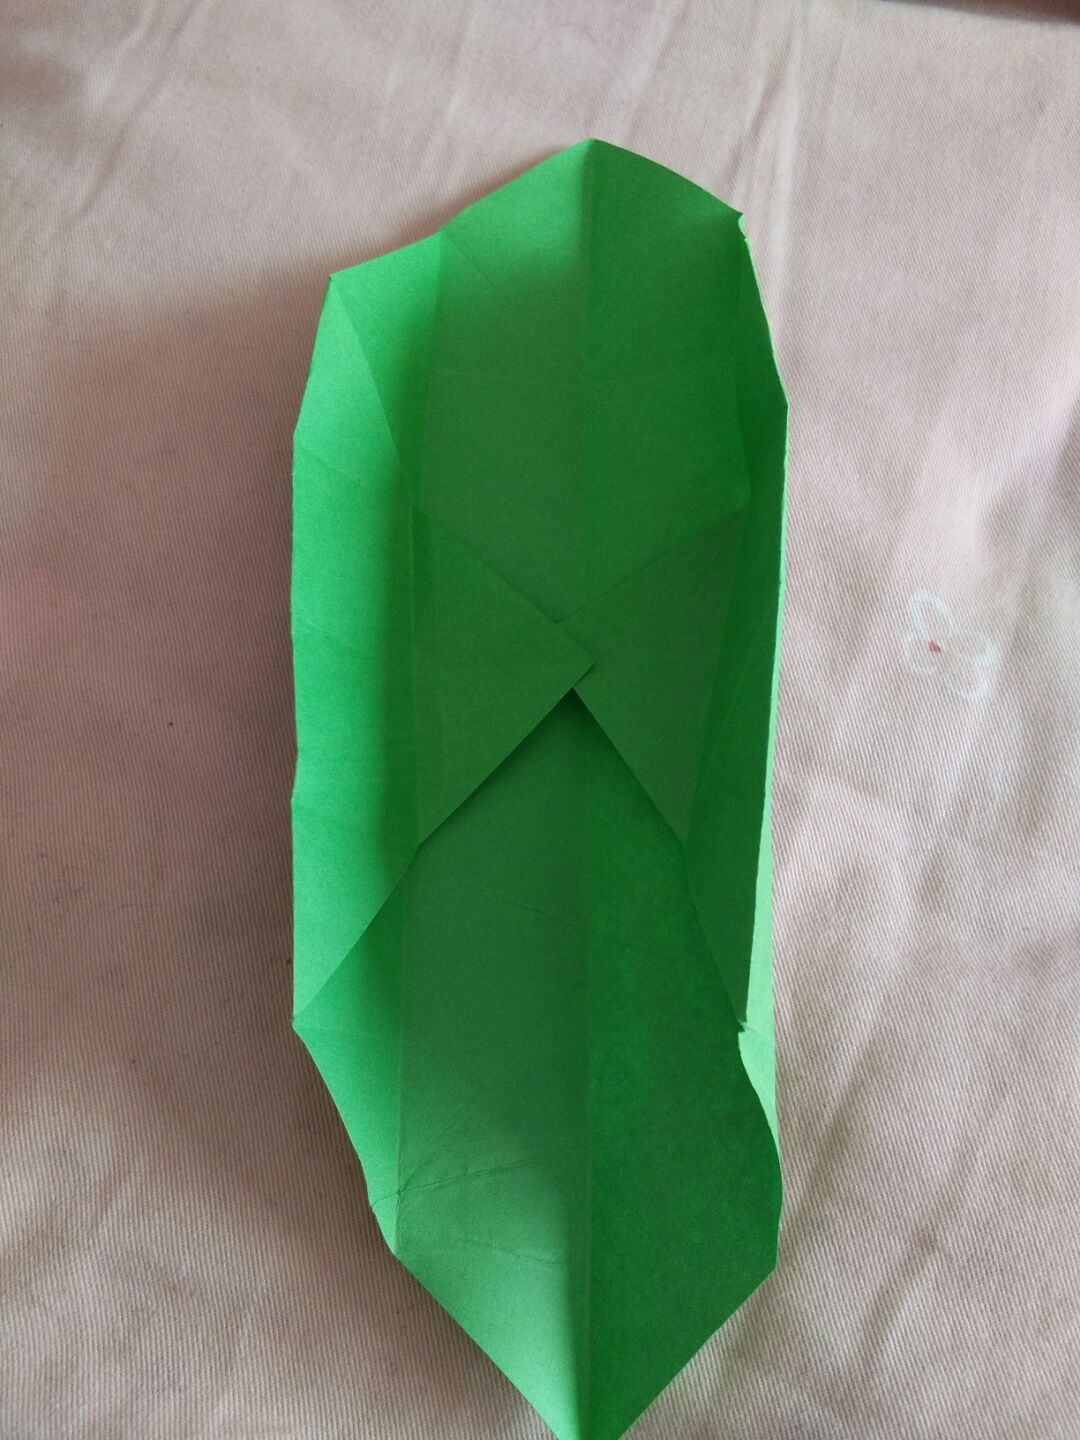 教你用彩纸来折叠简单实用的花朵小盒子